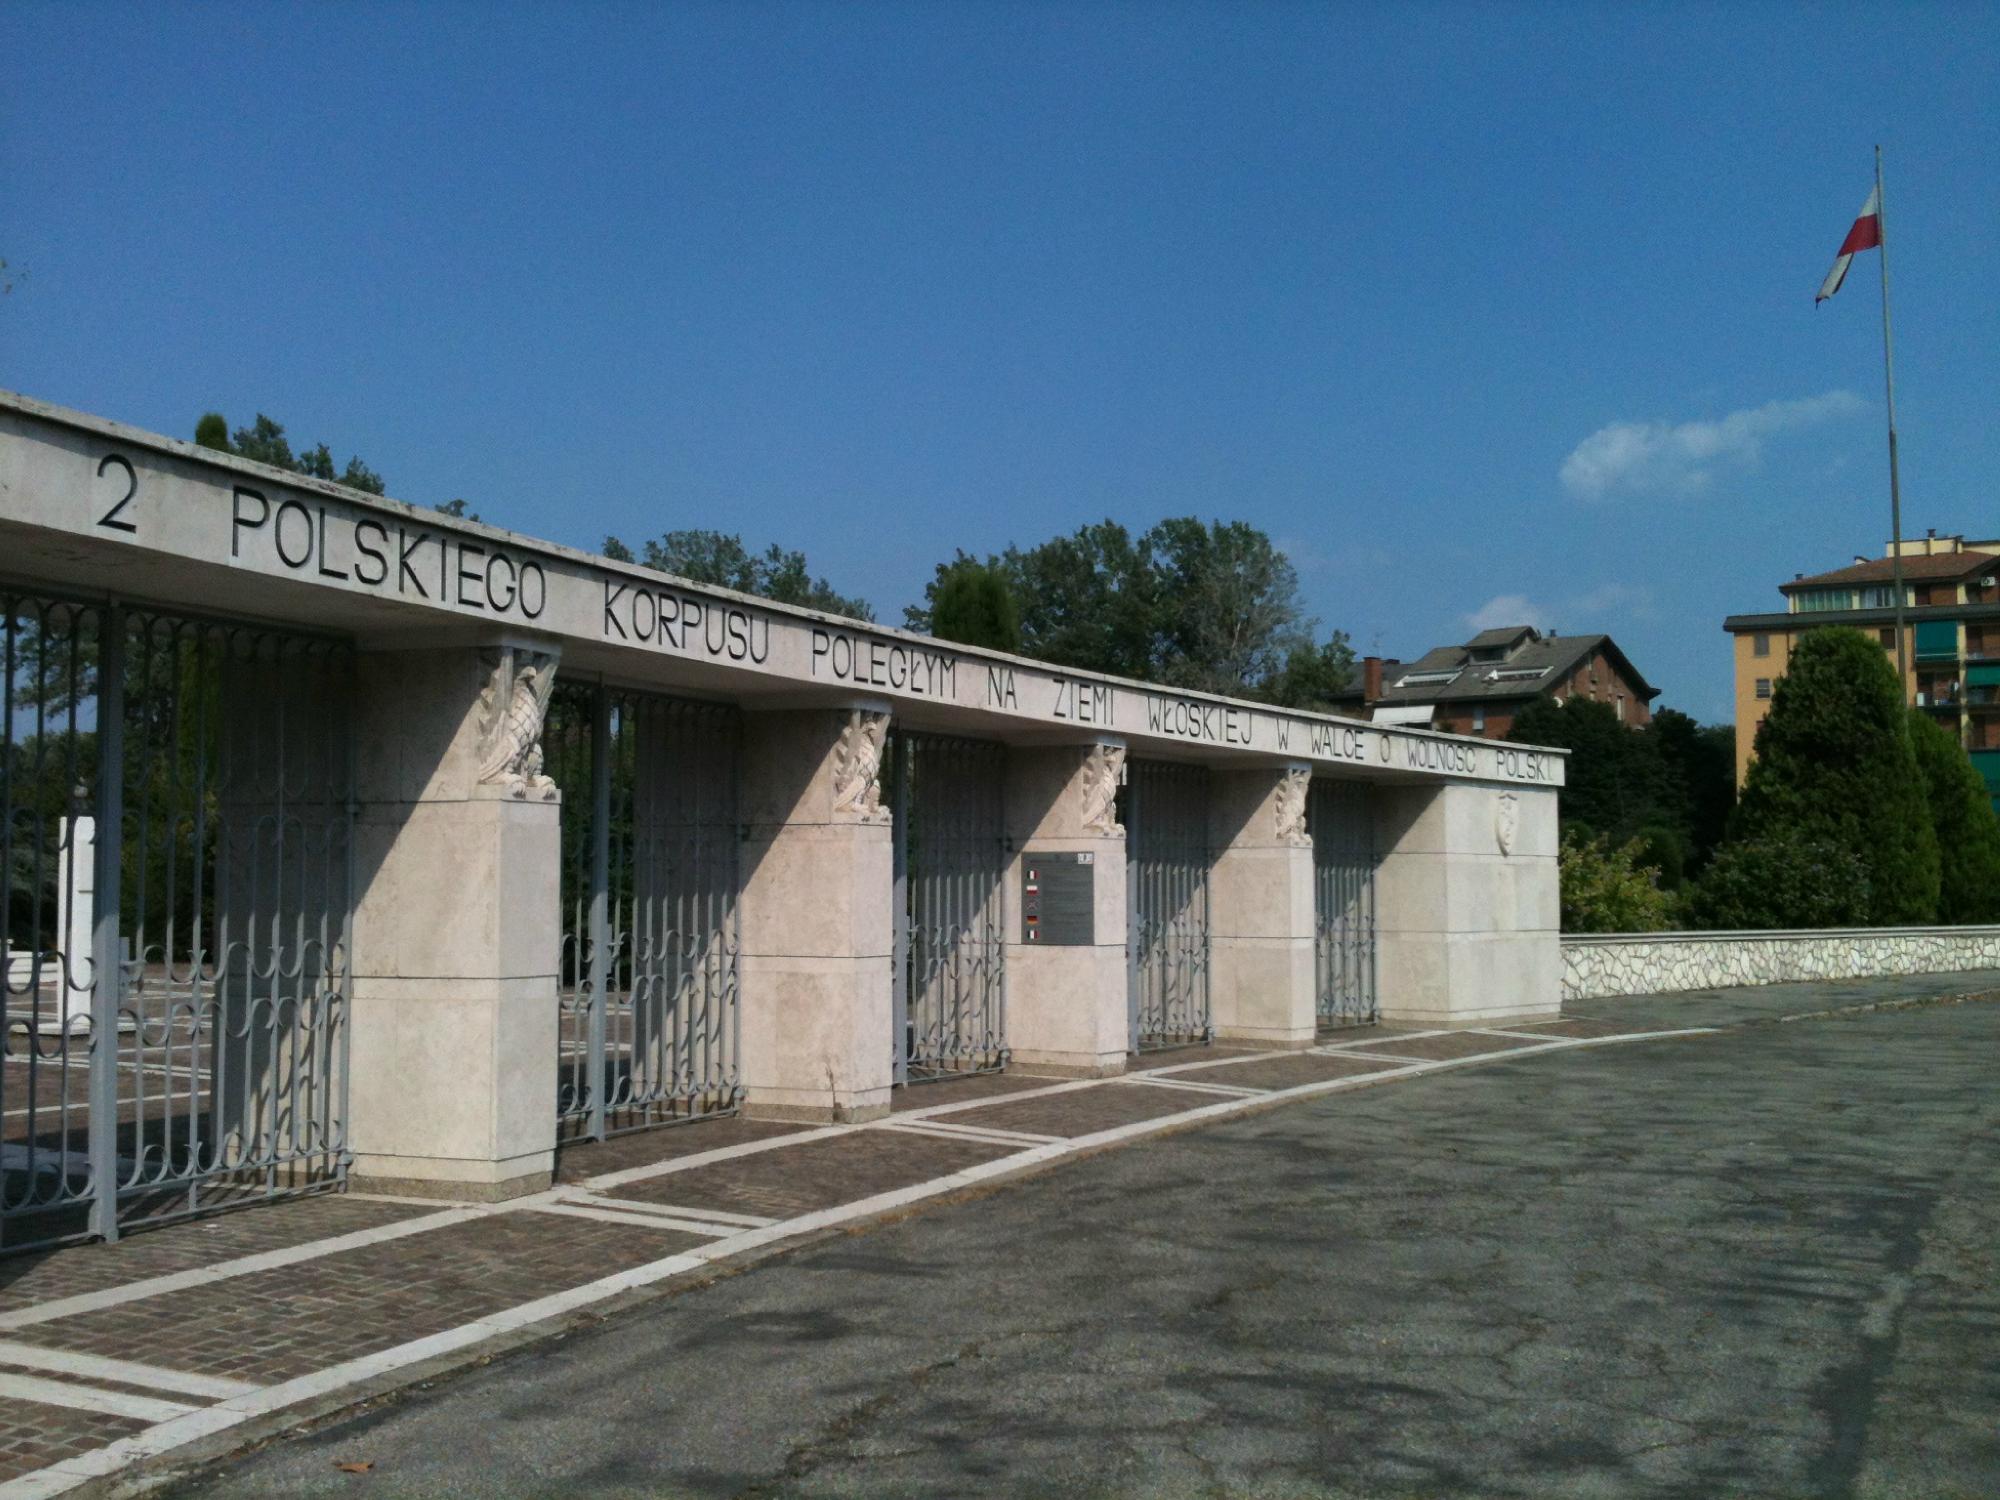 Bologna War Cemetery